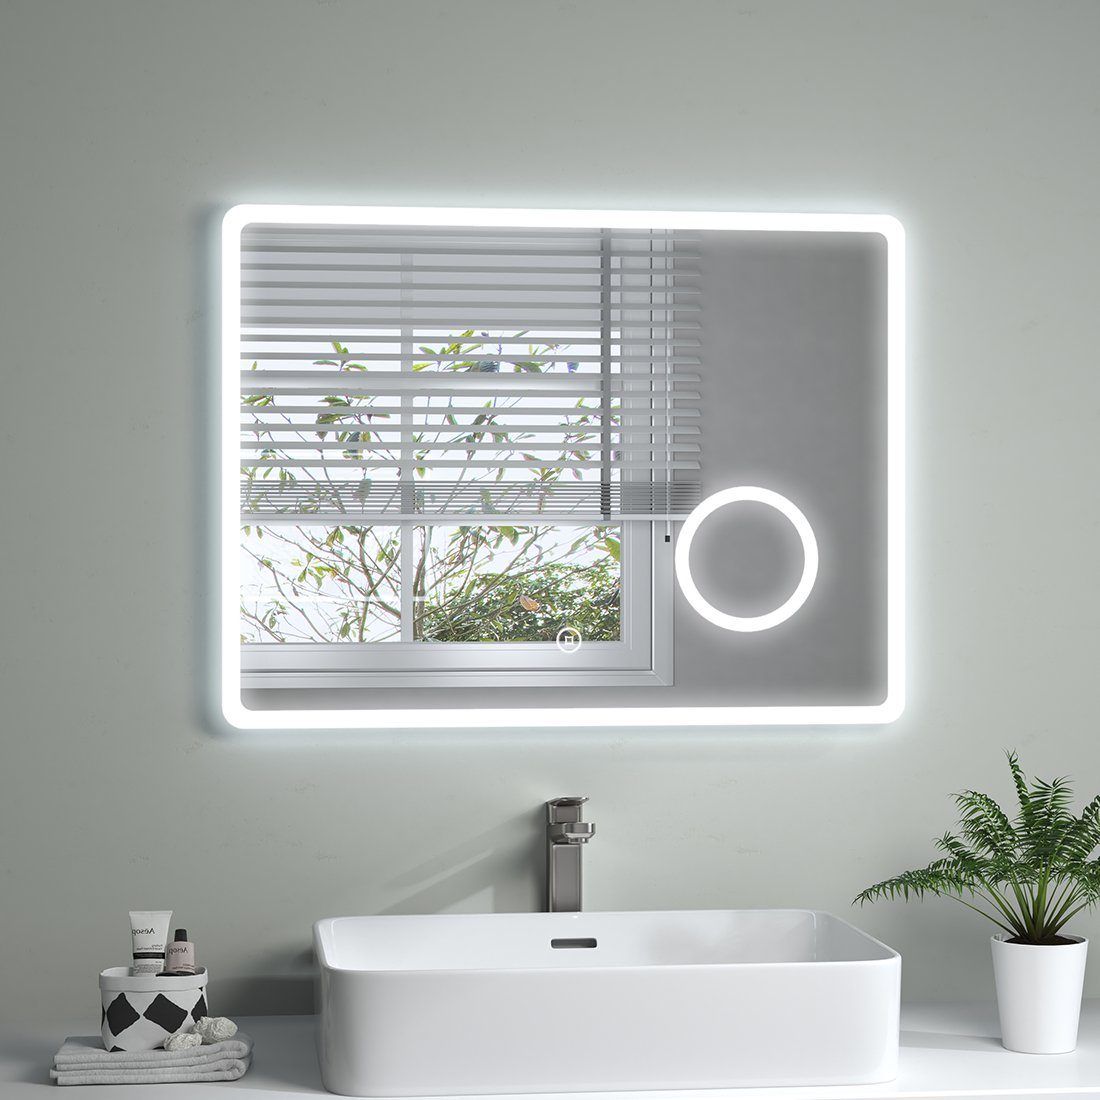 S'AFIELINA Badspiegel Rechteckig Badspiegel LED Badezimmerspiegel mit Beleuchtung, Touchschalter,3-fach Vergrößerung,Energiesparend,IP44